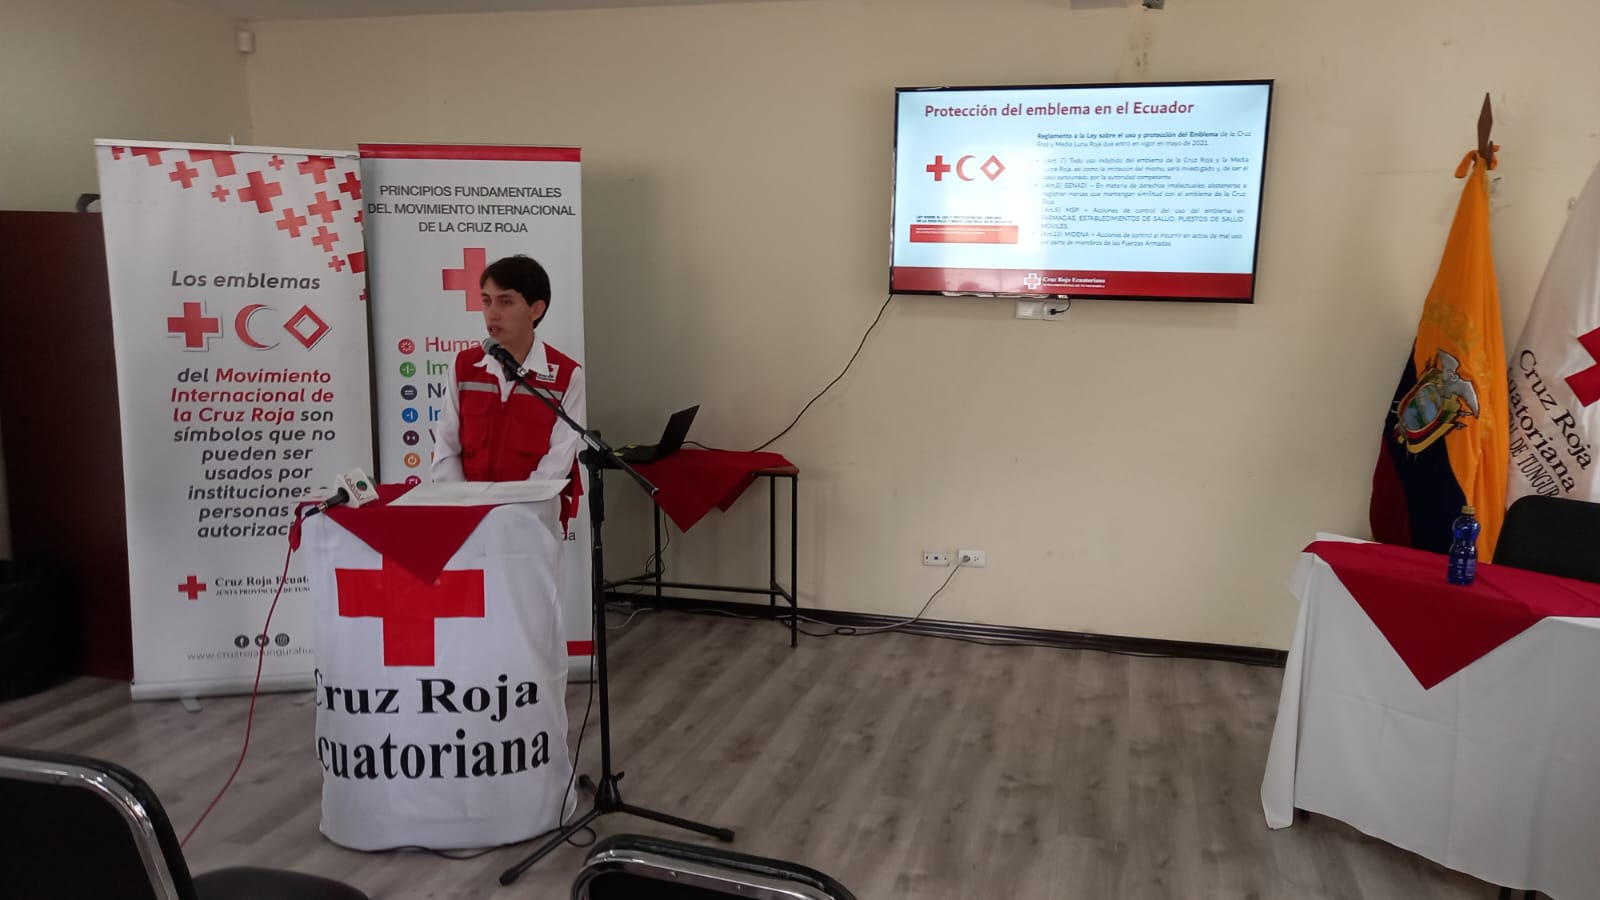 La presentación de la campaña se realizó en las instalaciones de la Junta Provincial de Tungurahua.